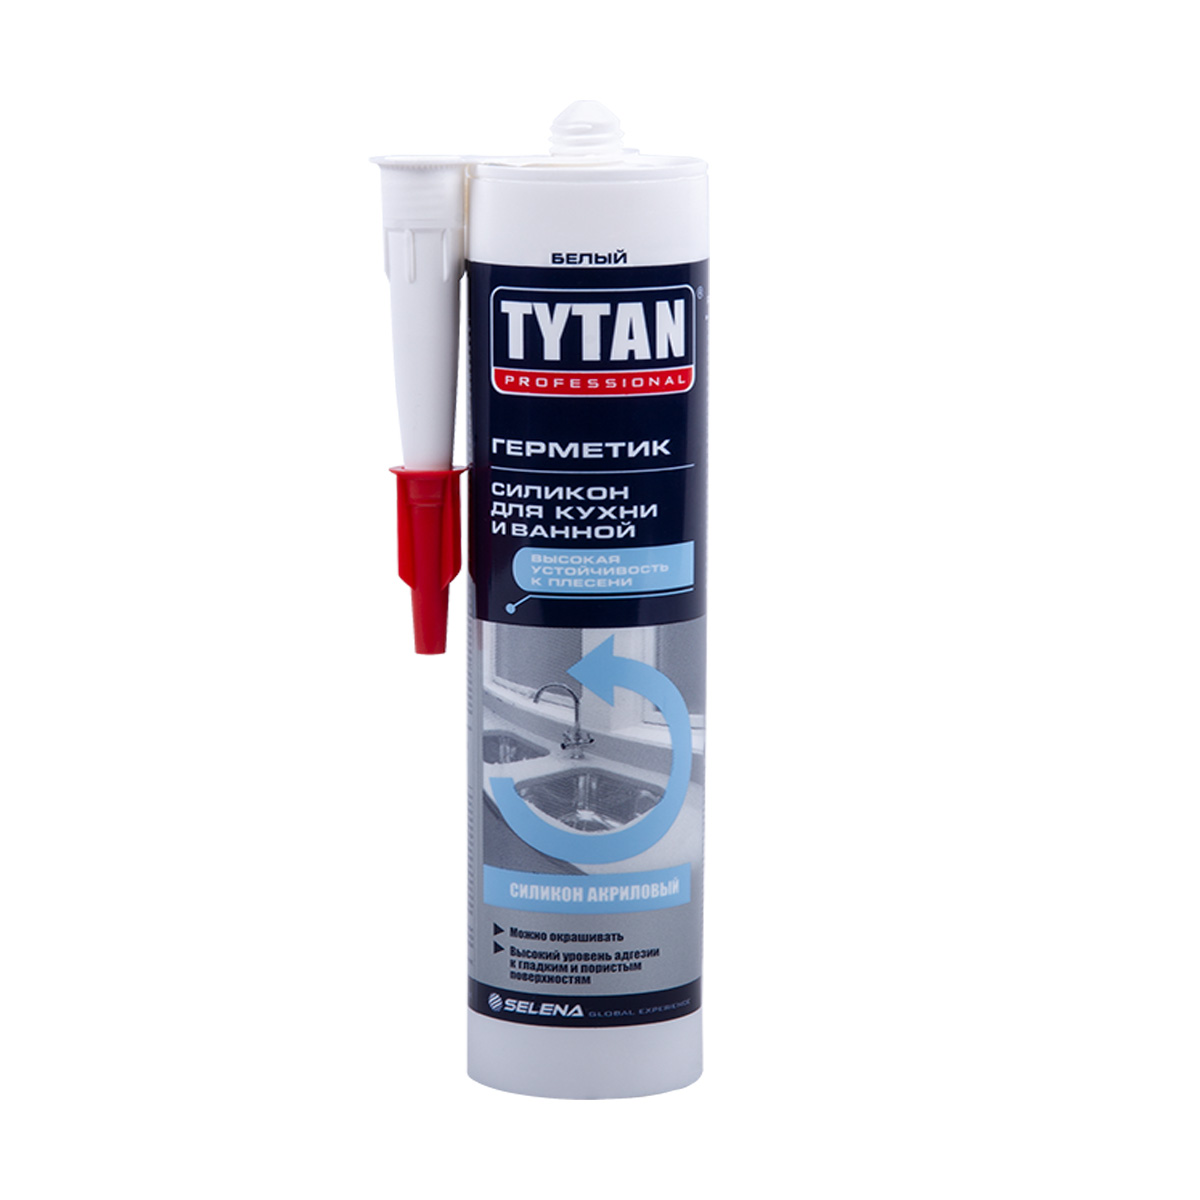 Tytan professional герметик силиконакриловый для ванной и кухни